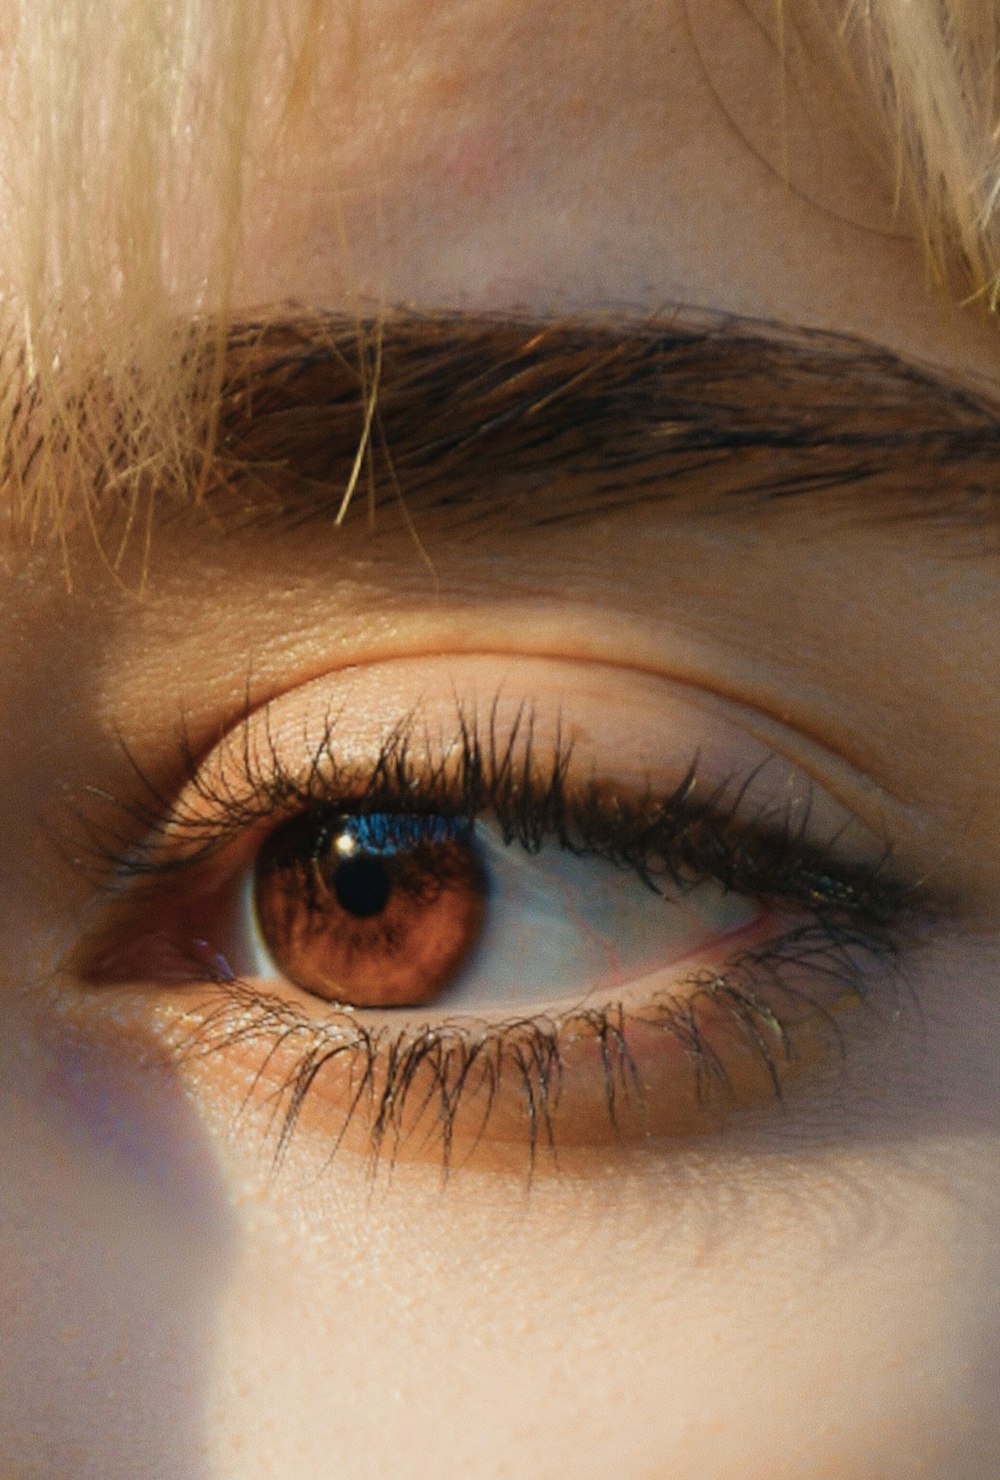 Un primer plano del ojo de una persona con pestañas largas